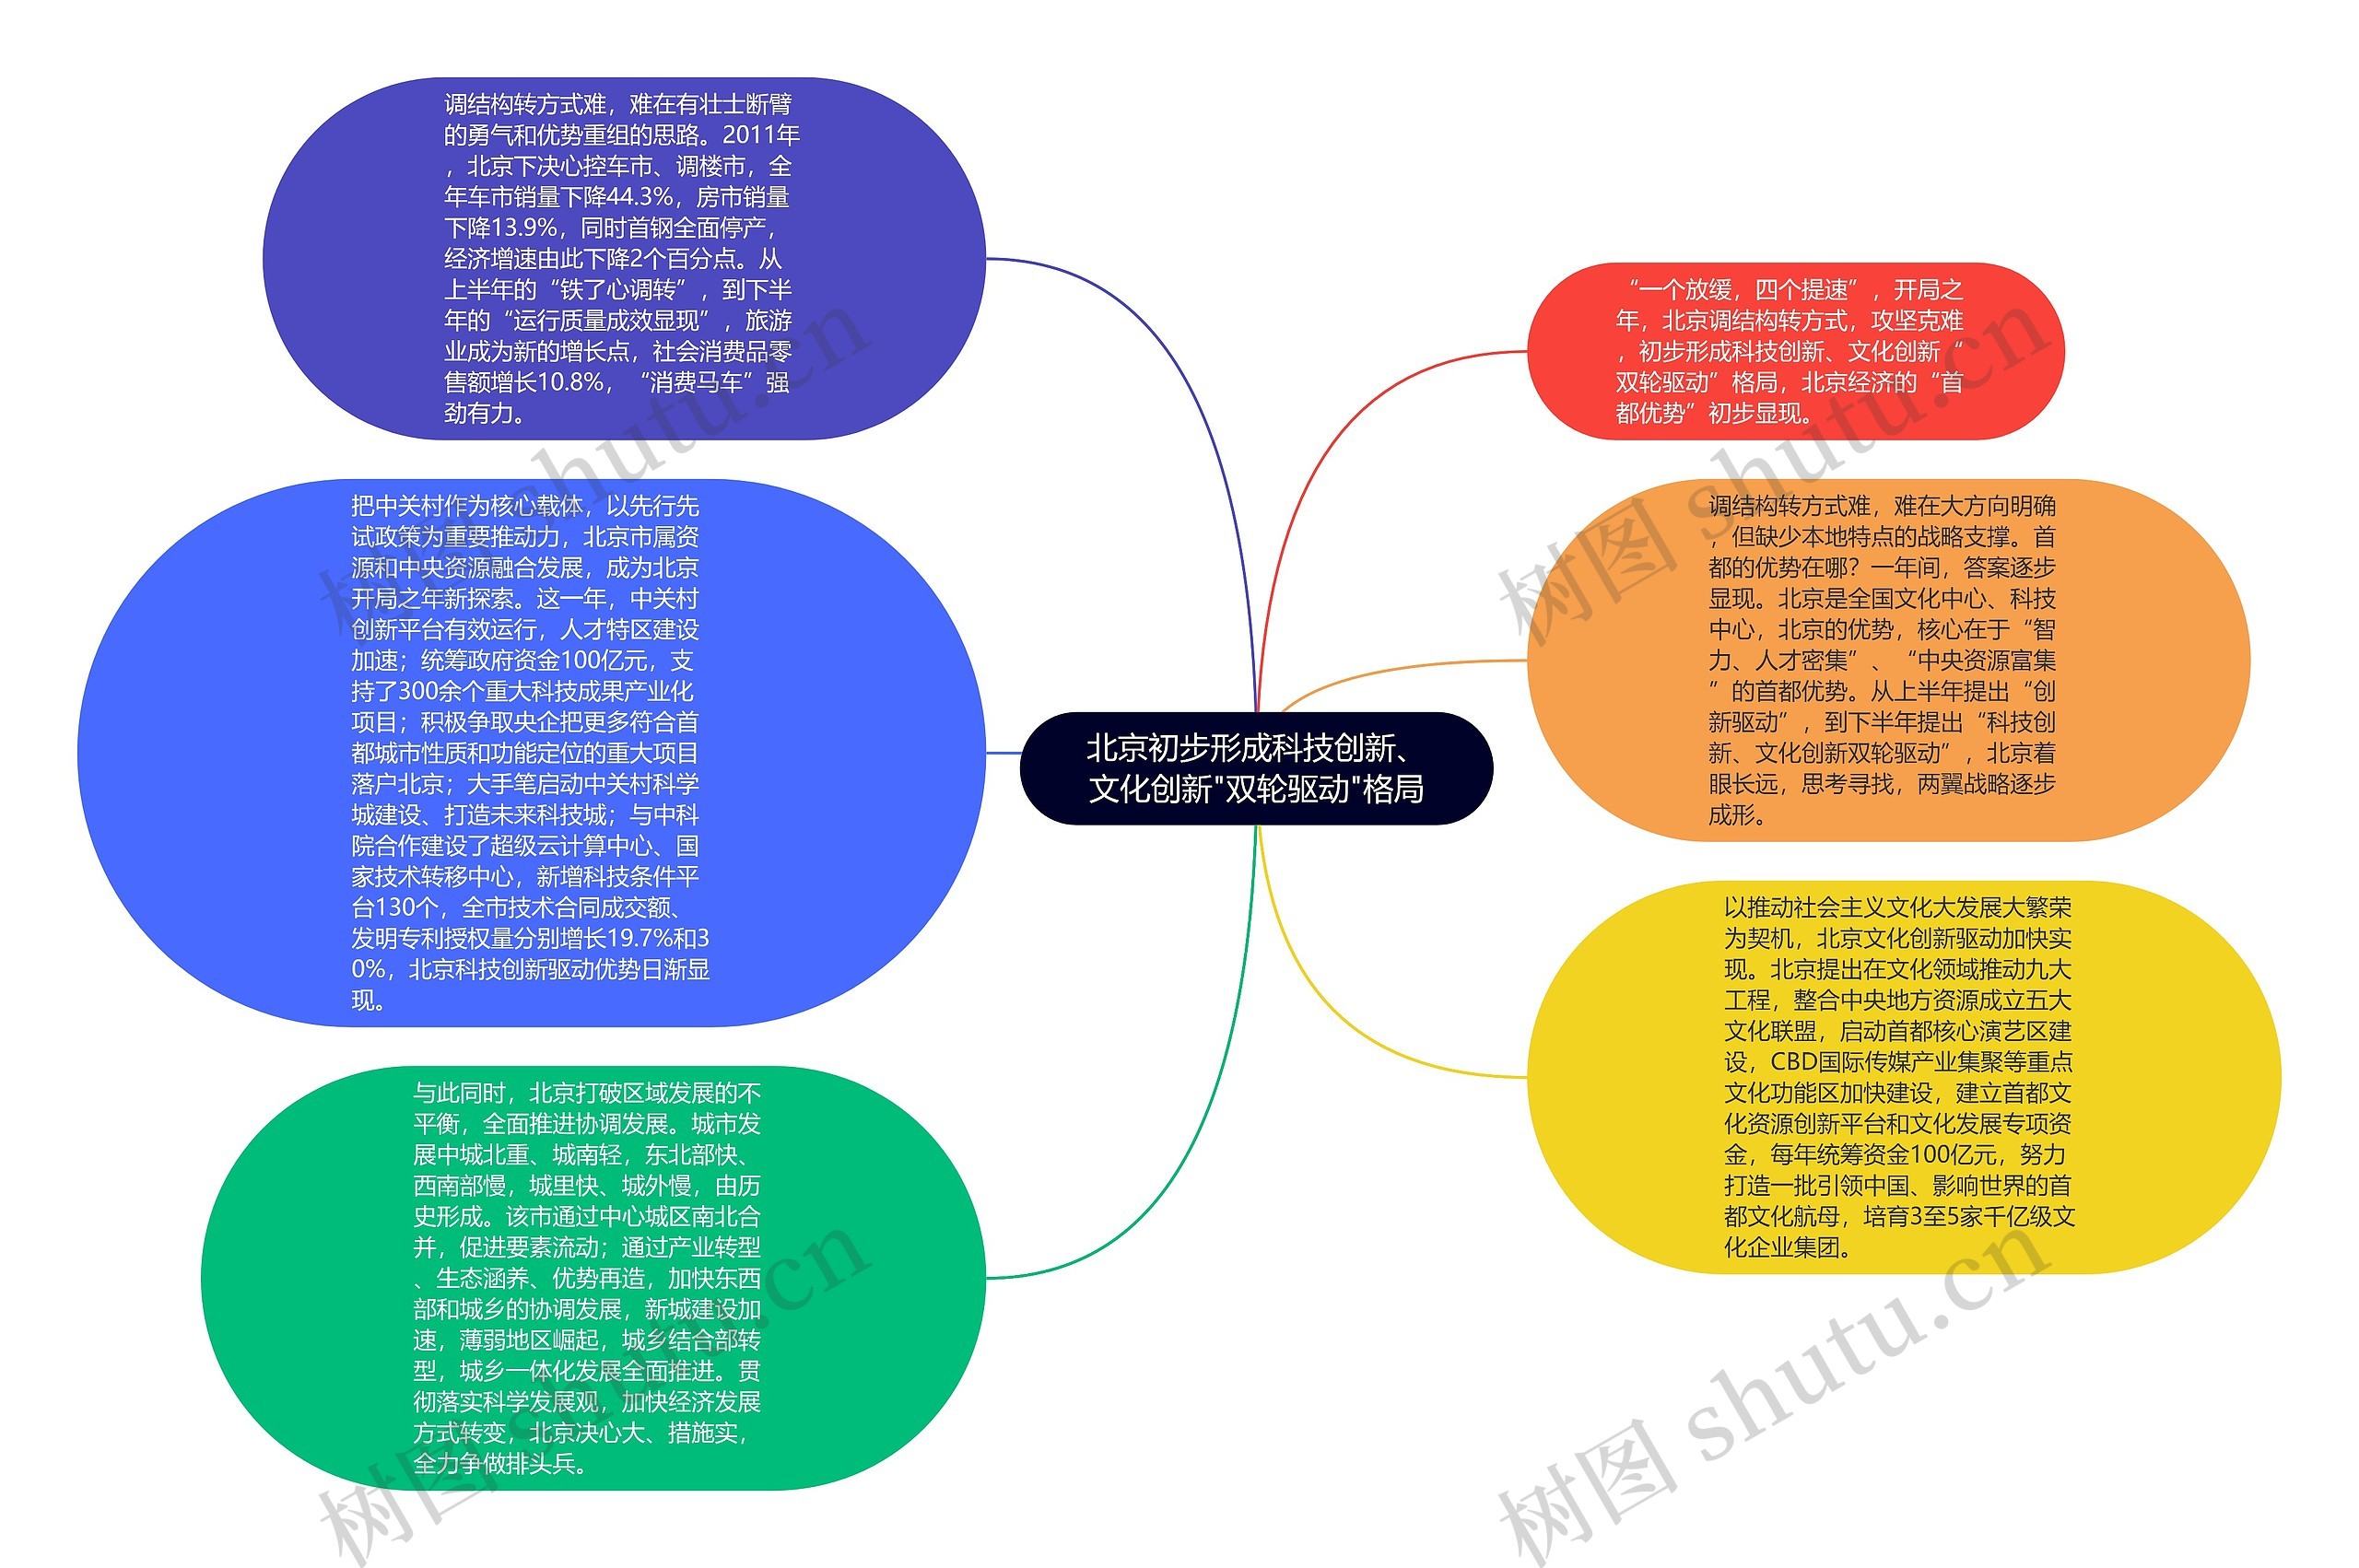 北京初步形成科技创新、文化创新"双轮驱动"格局思维导图